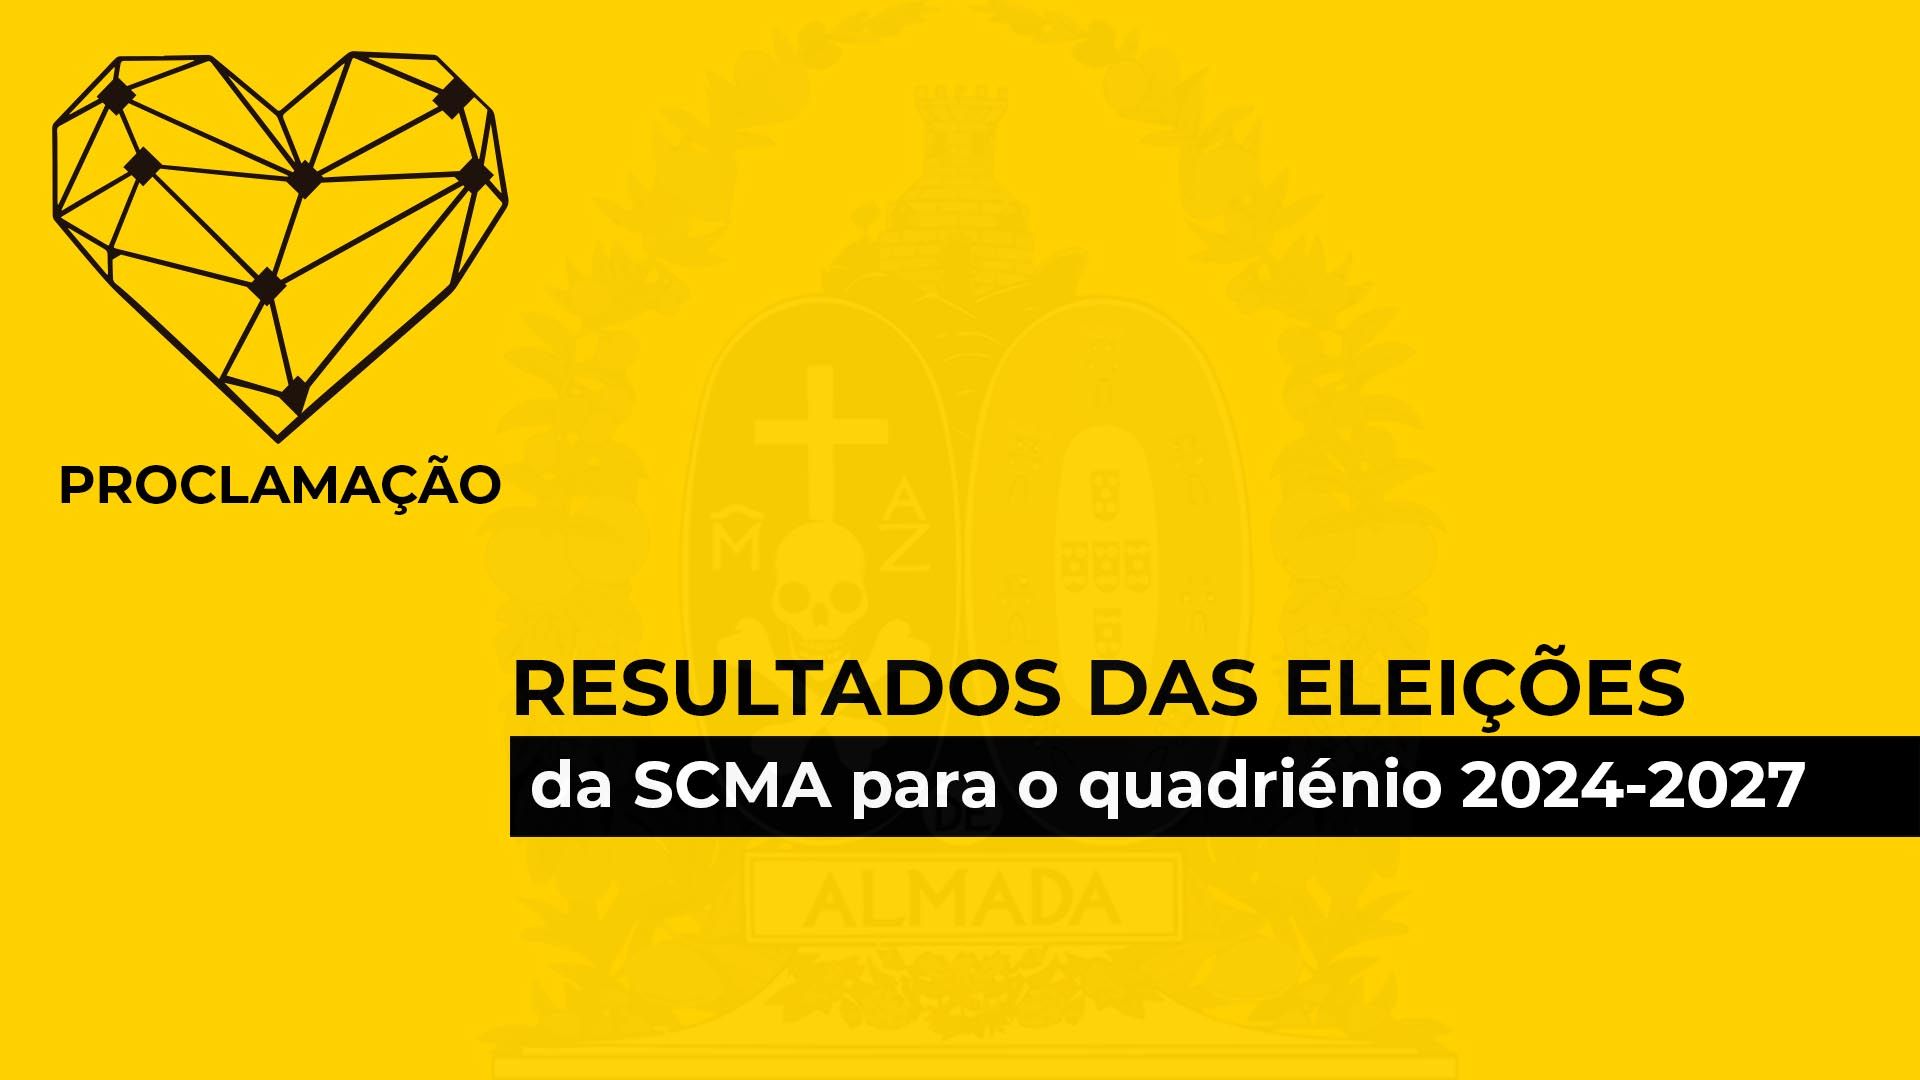 Proclamação de resultados das eleições da SCMA para o quadriénio 2024-2027